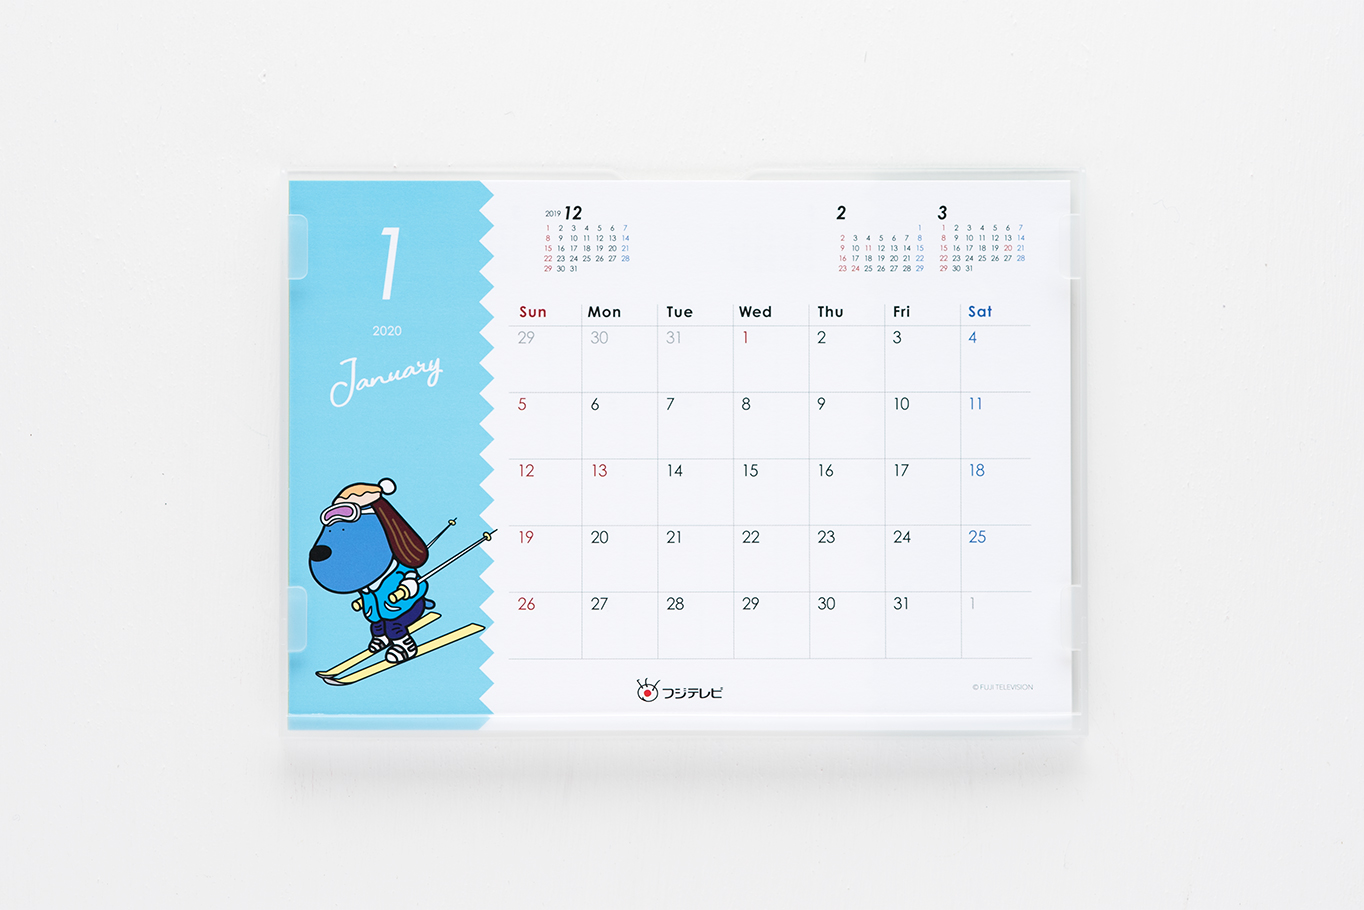 フジテレビのラフちゃん2020年卓上カレンダーの1月